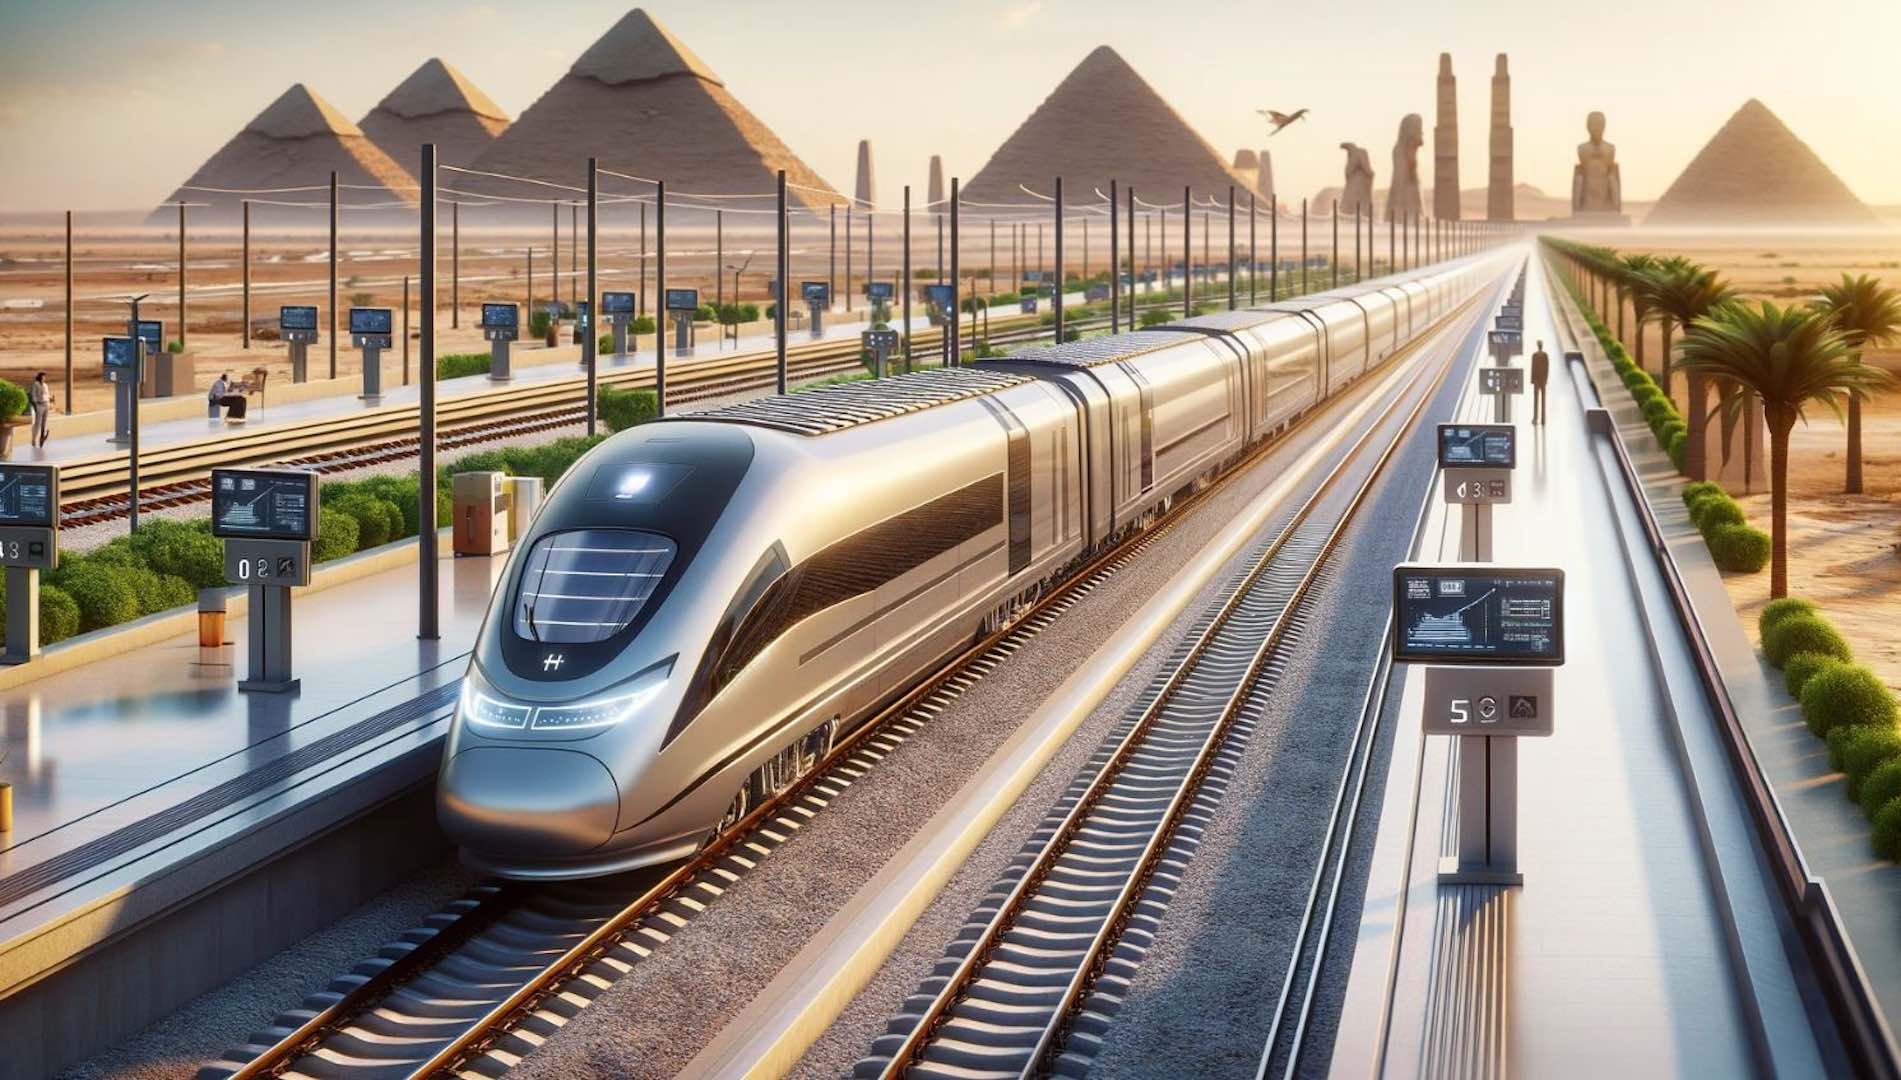 إنجاز جديد في مجال النقل: الهيئة القومية لسكك حديد مصر تعقد اتفاقيات مع شركاء دوليين